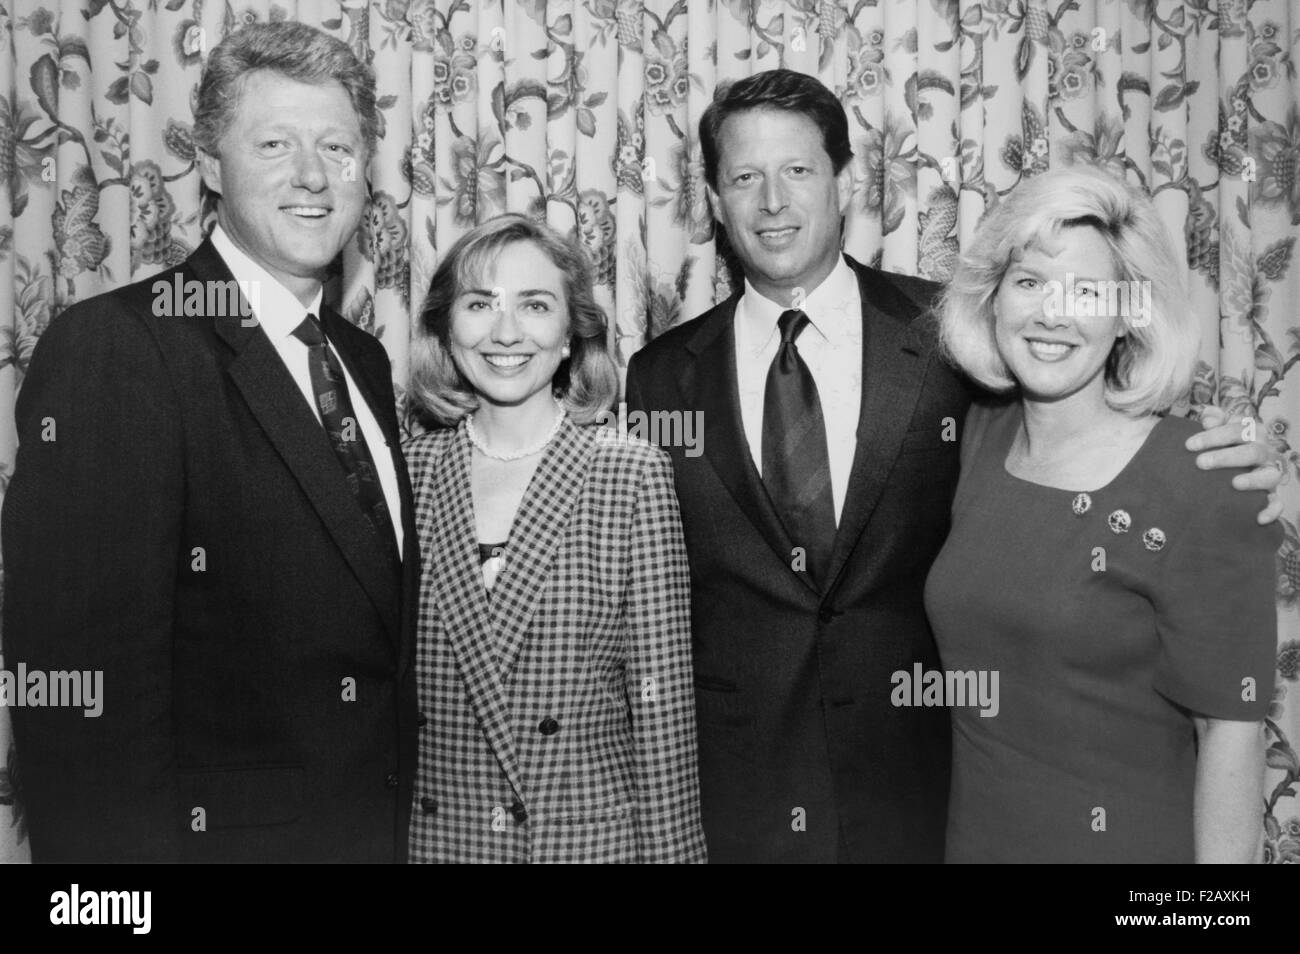 1992 demokratische Kandidaten für Präsidenten und Vizepräsidenten mit ihren Ehefrauen. L-r: Zukunft Präsident Bill und Hillary Clinton; Zukunft-Vize-Präsident Albert Gore, Jr. und Tipper Gore. (BSLOC 2015 2 184) Stockfoto